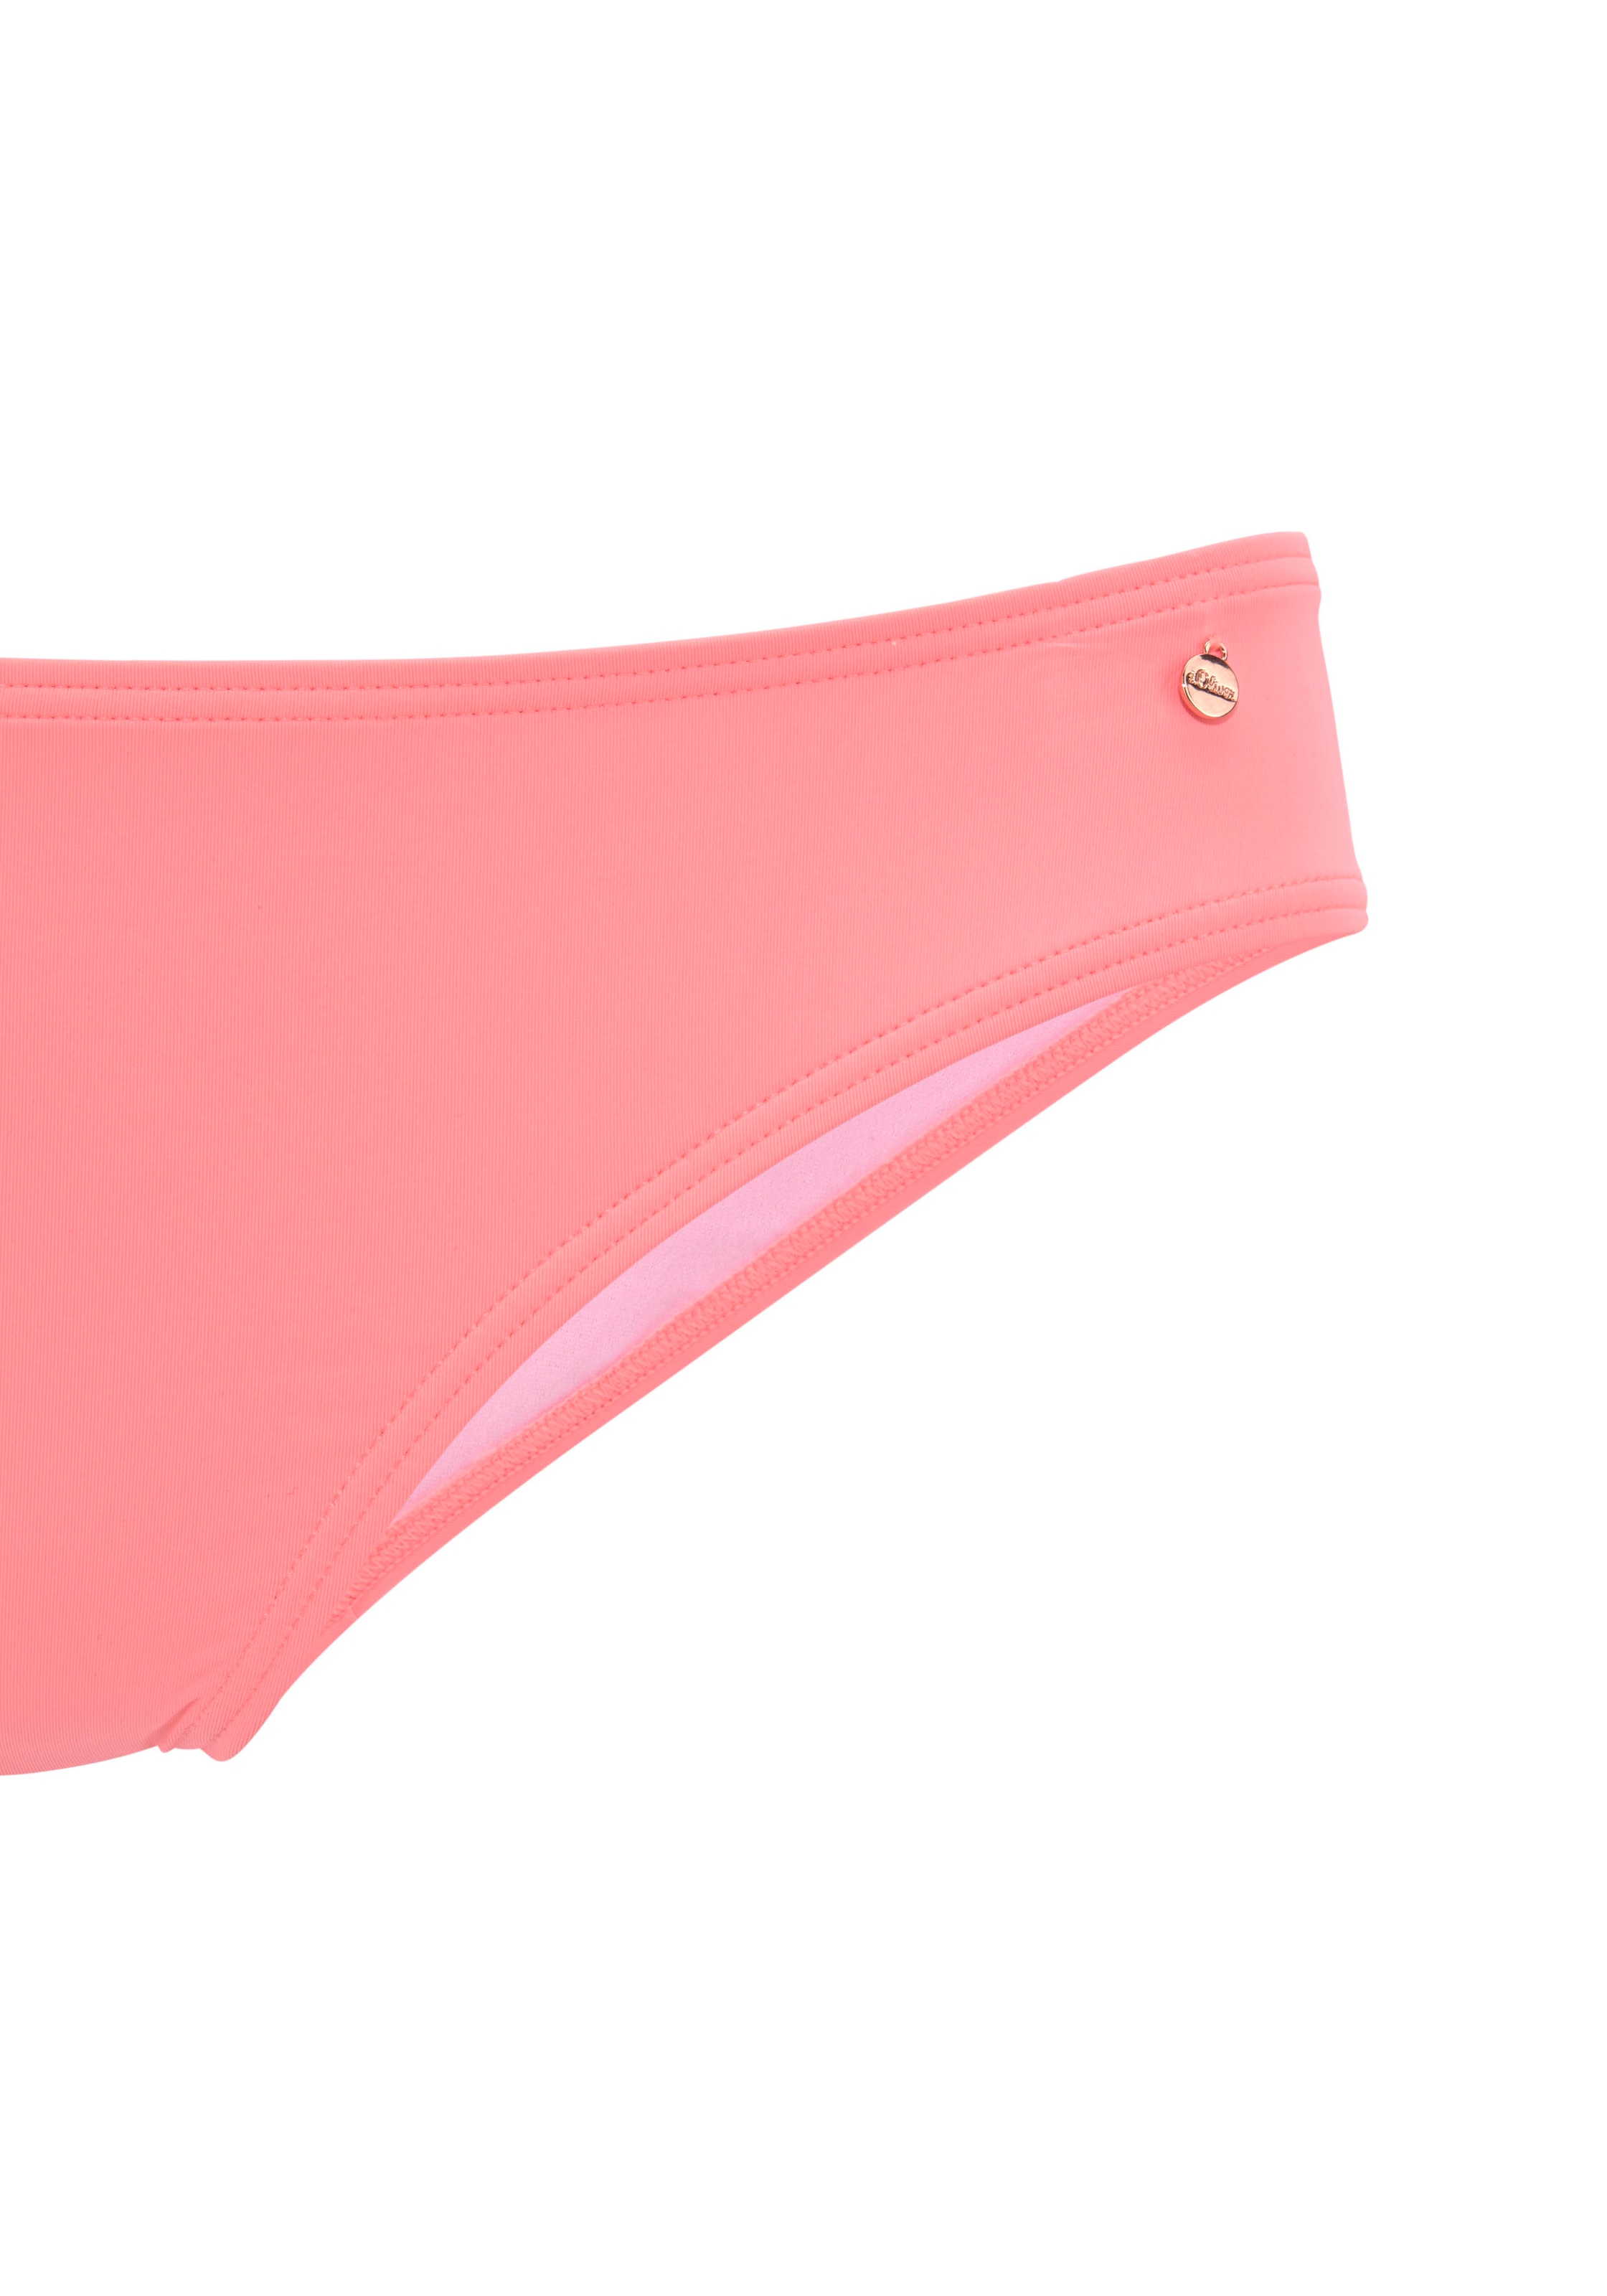 s.Oliver Push-Up-Bikini, mit zusätzlichen Bindebändern » LASCANA |  Bademode, Unterwäsche & Lingerie online kaufen